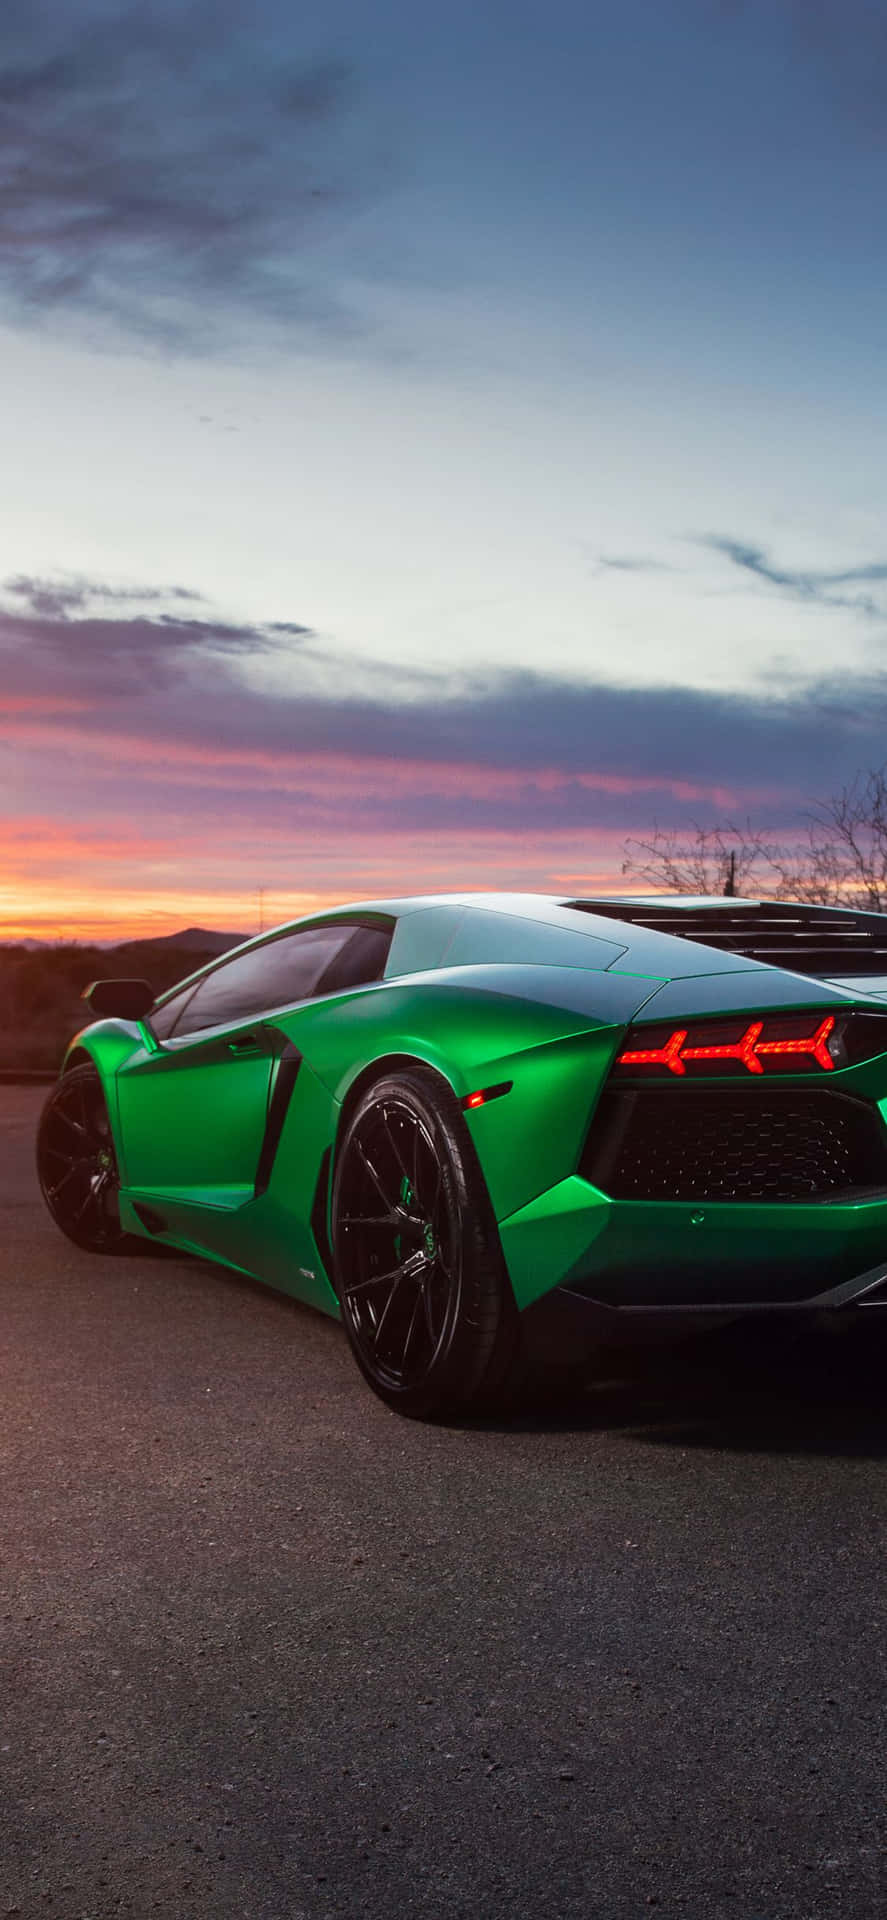 Shine Bright Like A Green Lamborghini Wallpaper